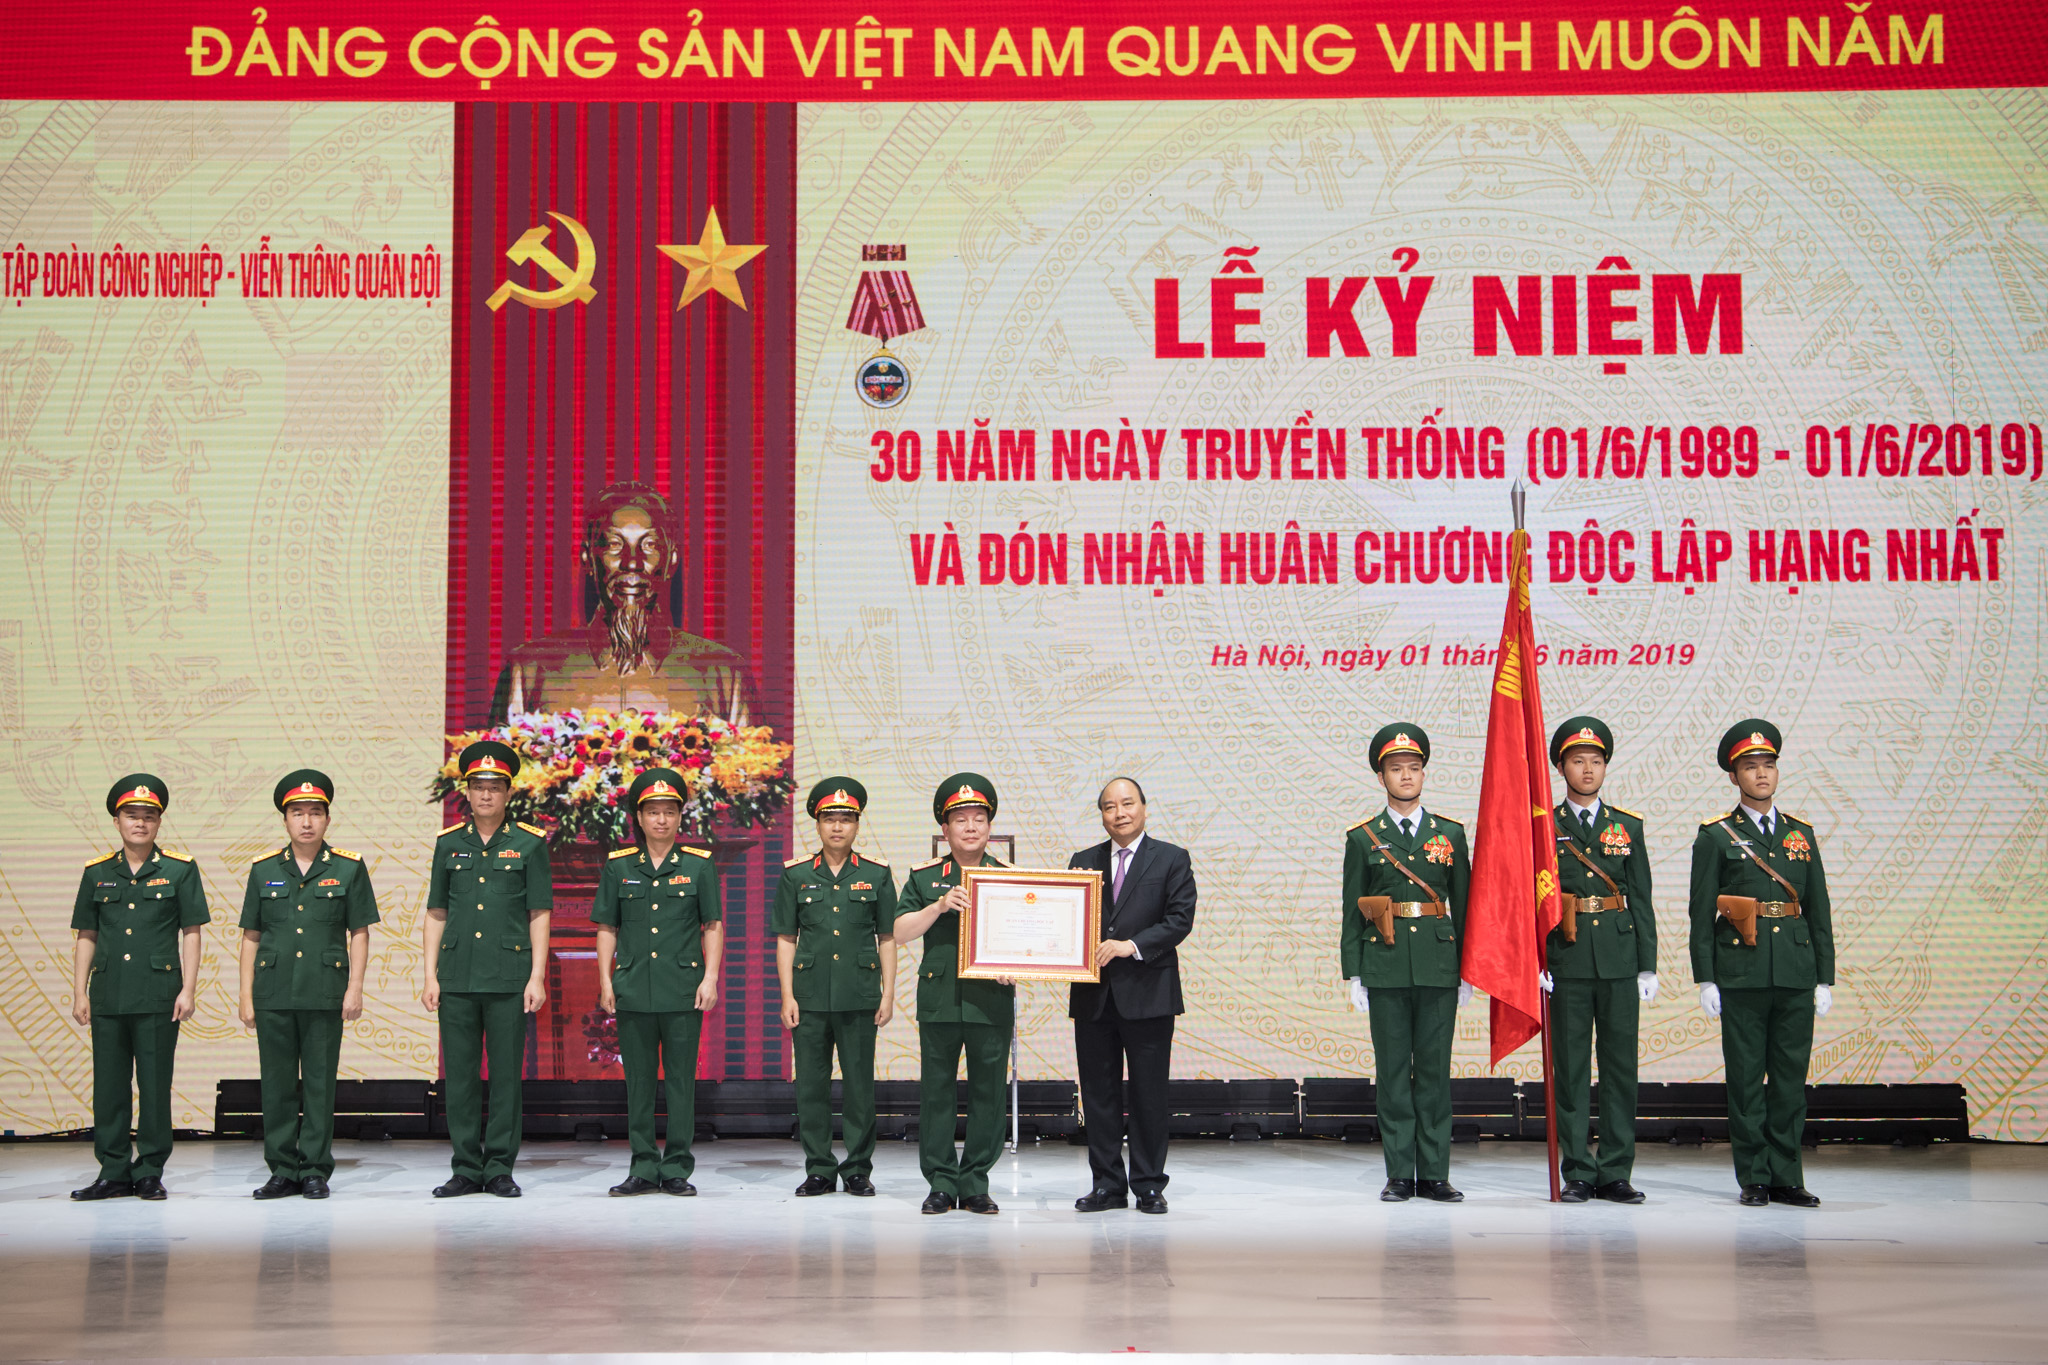 Thủ tướng Chính phủ Nguyễn Xuân Phú trao tặng Huân chương Độc lập hạng Nhất cho Tập đoàn Công nghiệp - Viễn thông Quân đội Viettel.